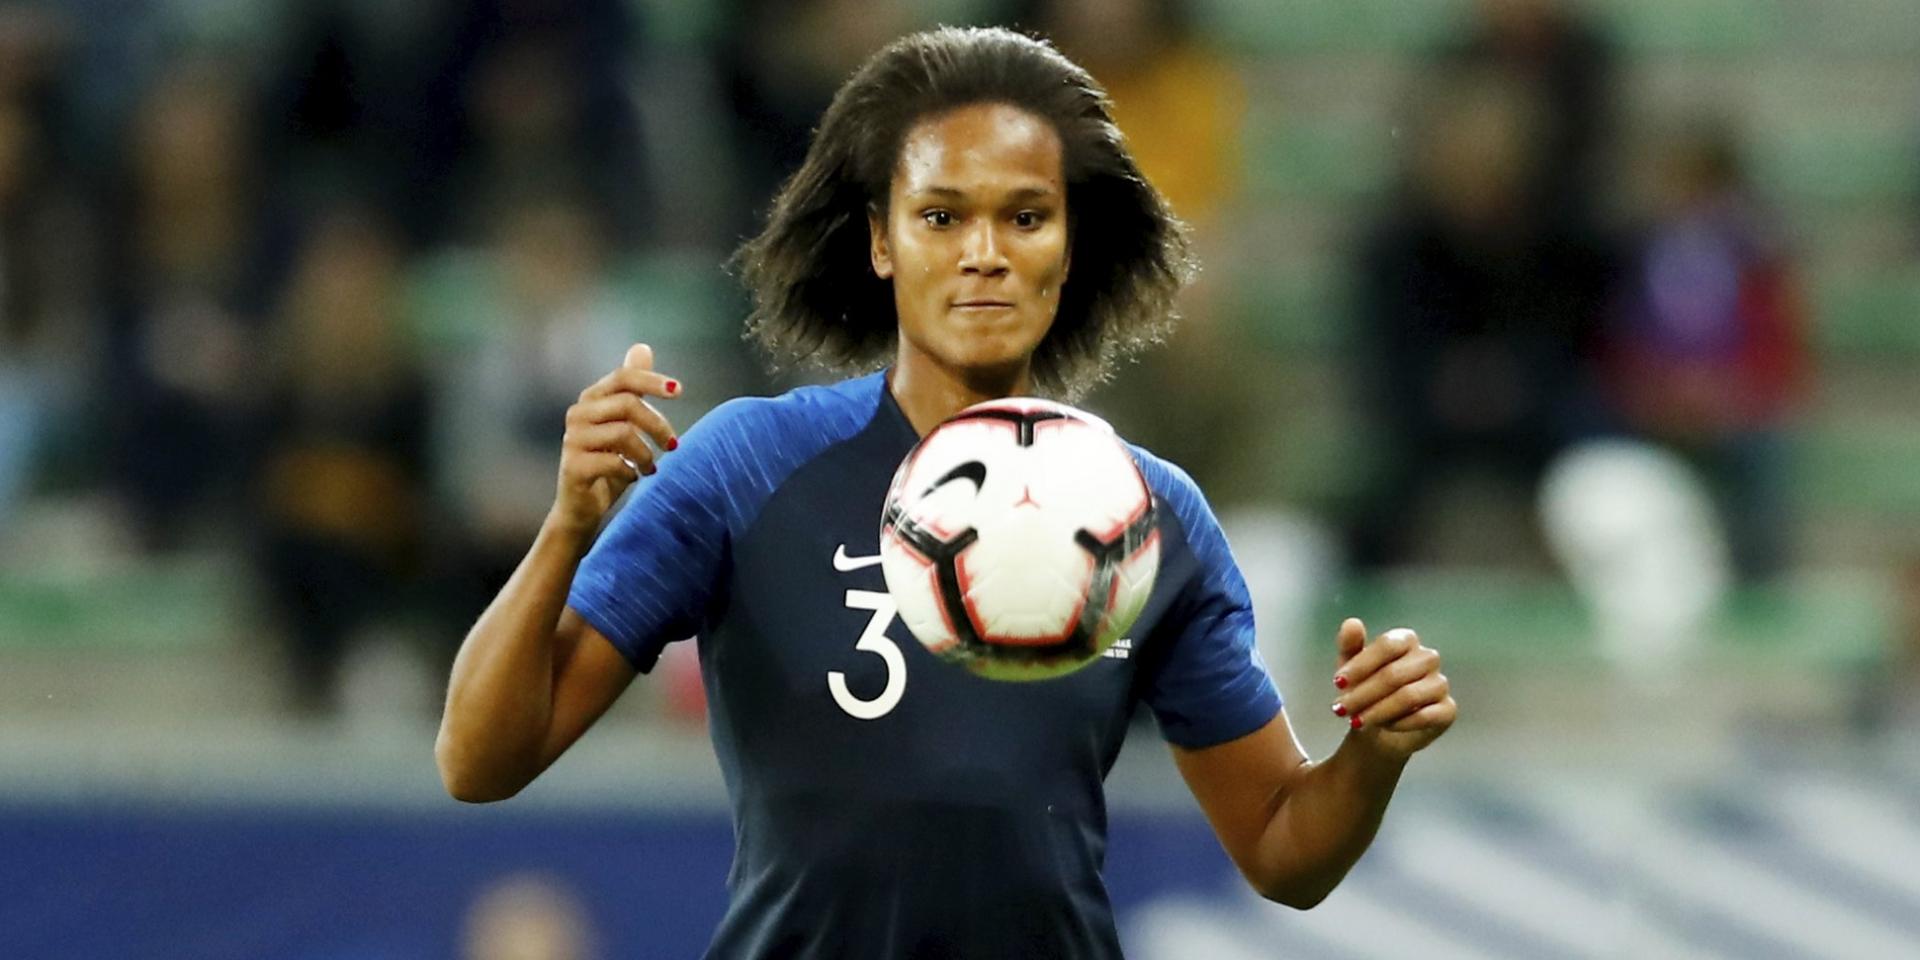     Défaite des Bleues face aux Américaines en 1/4 de finale du mondial 2019

